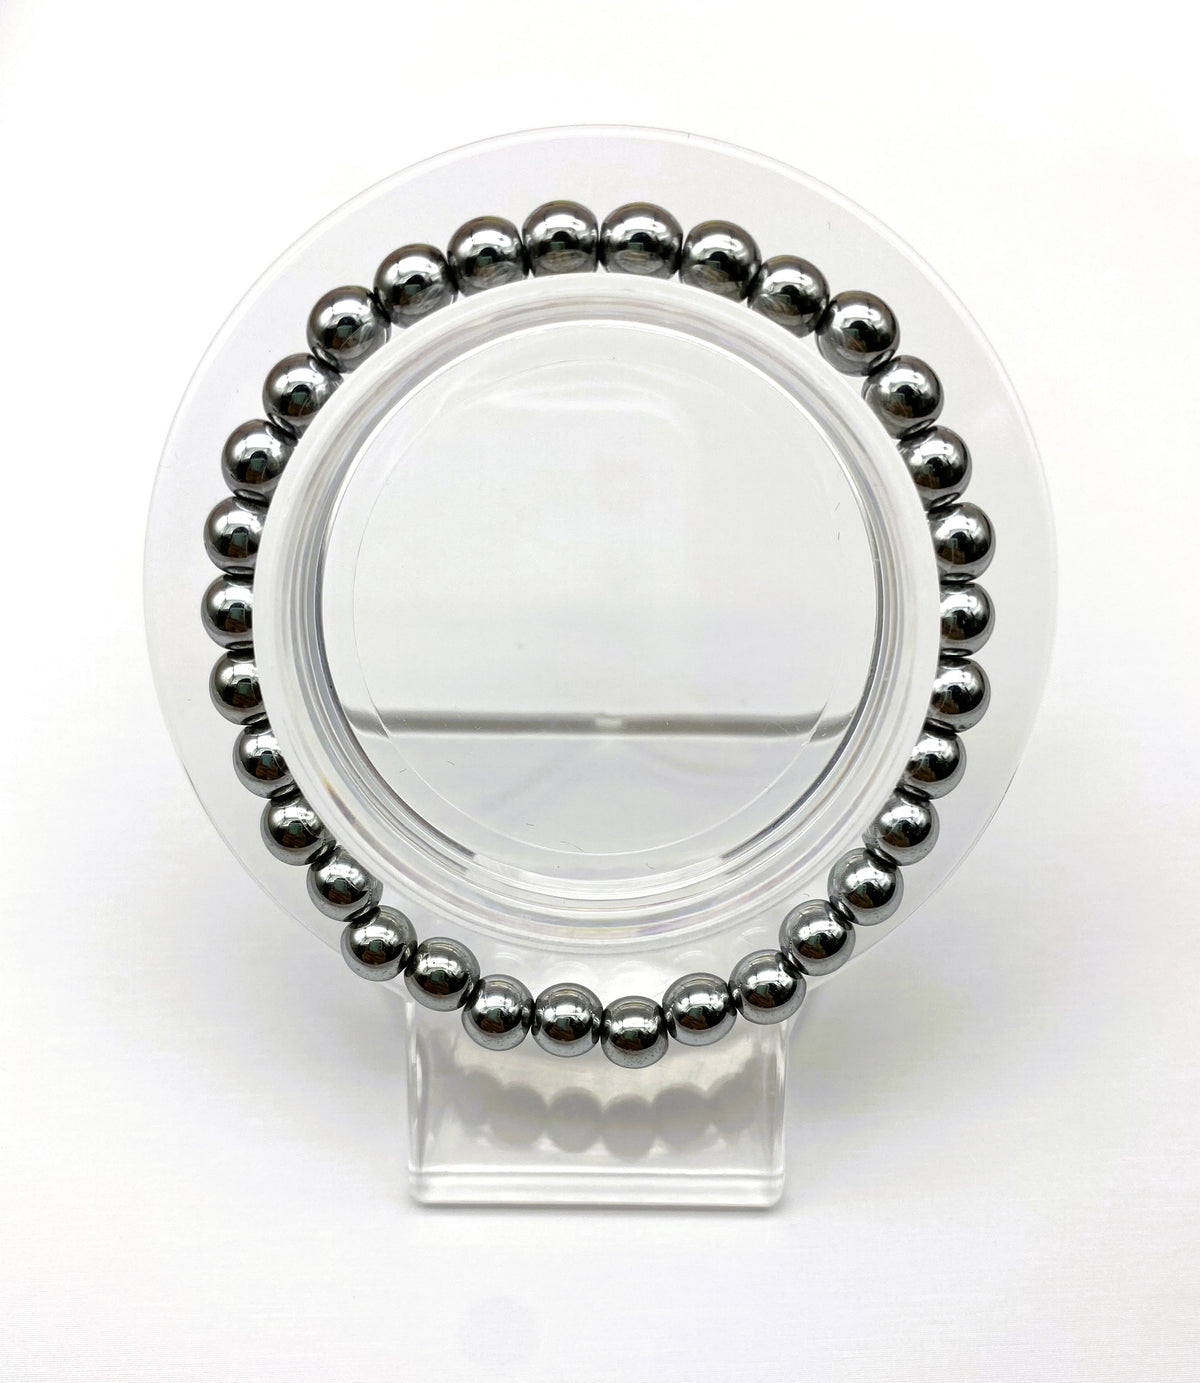 Hematite $1.99 Plain Design  8mm 6mm Bracelet Collection Gemstone Round Beads Stretch Bracelet 7.5 Inch Unisex